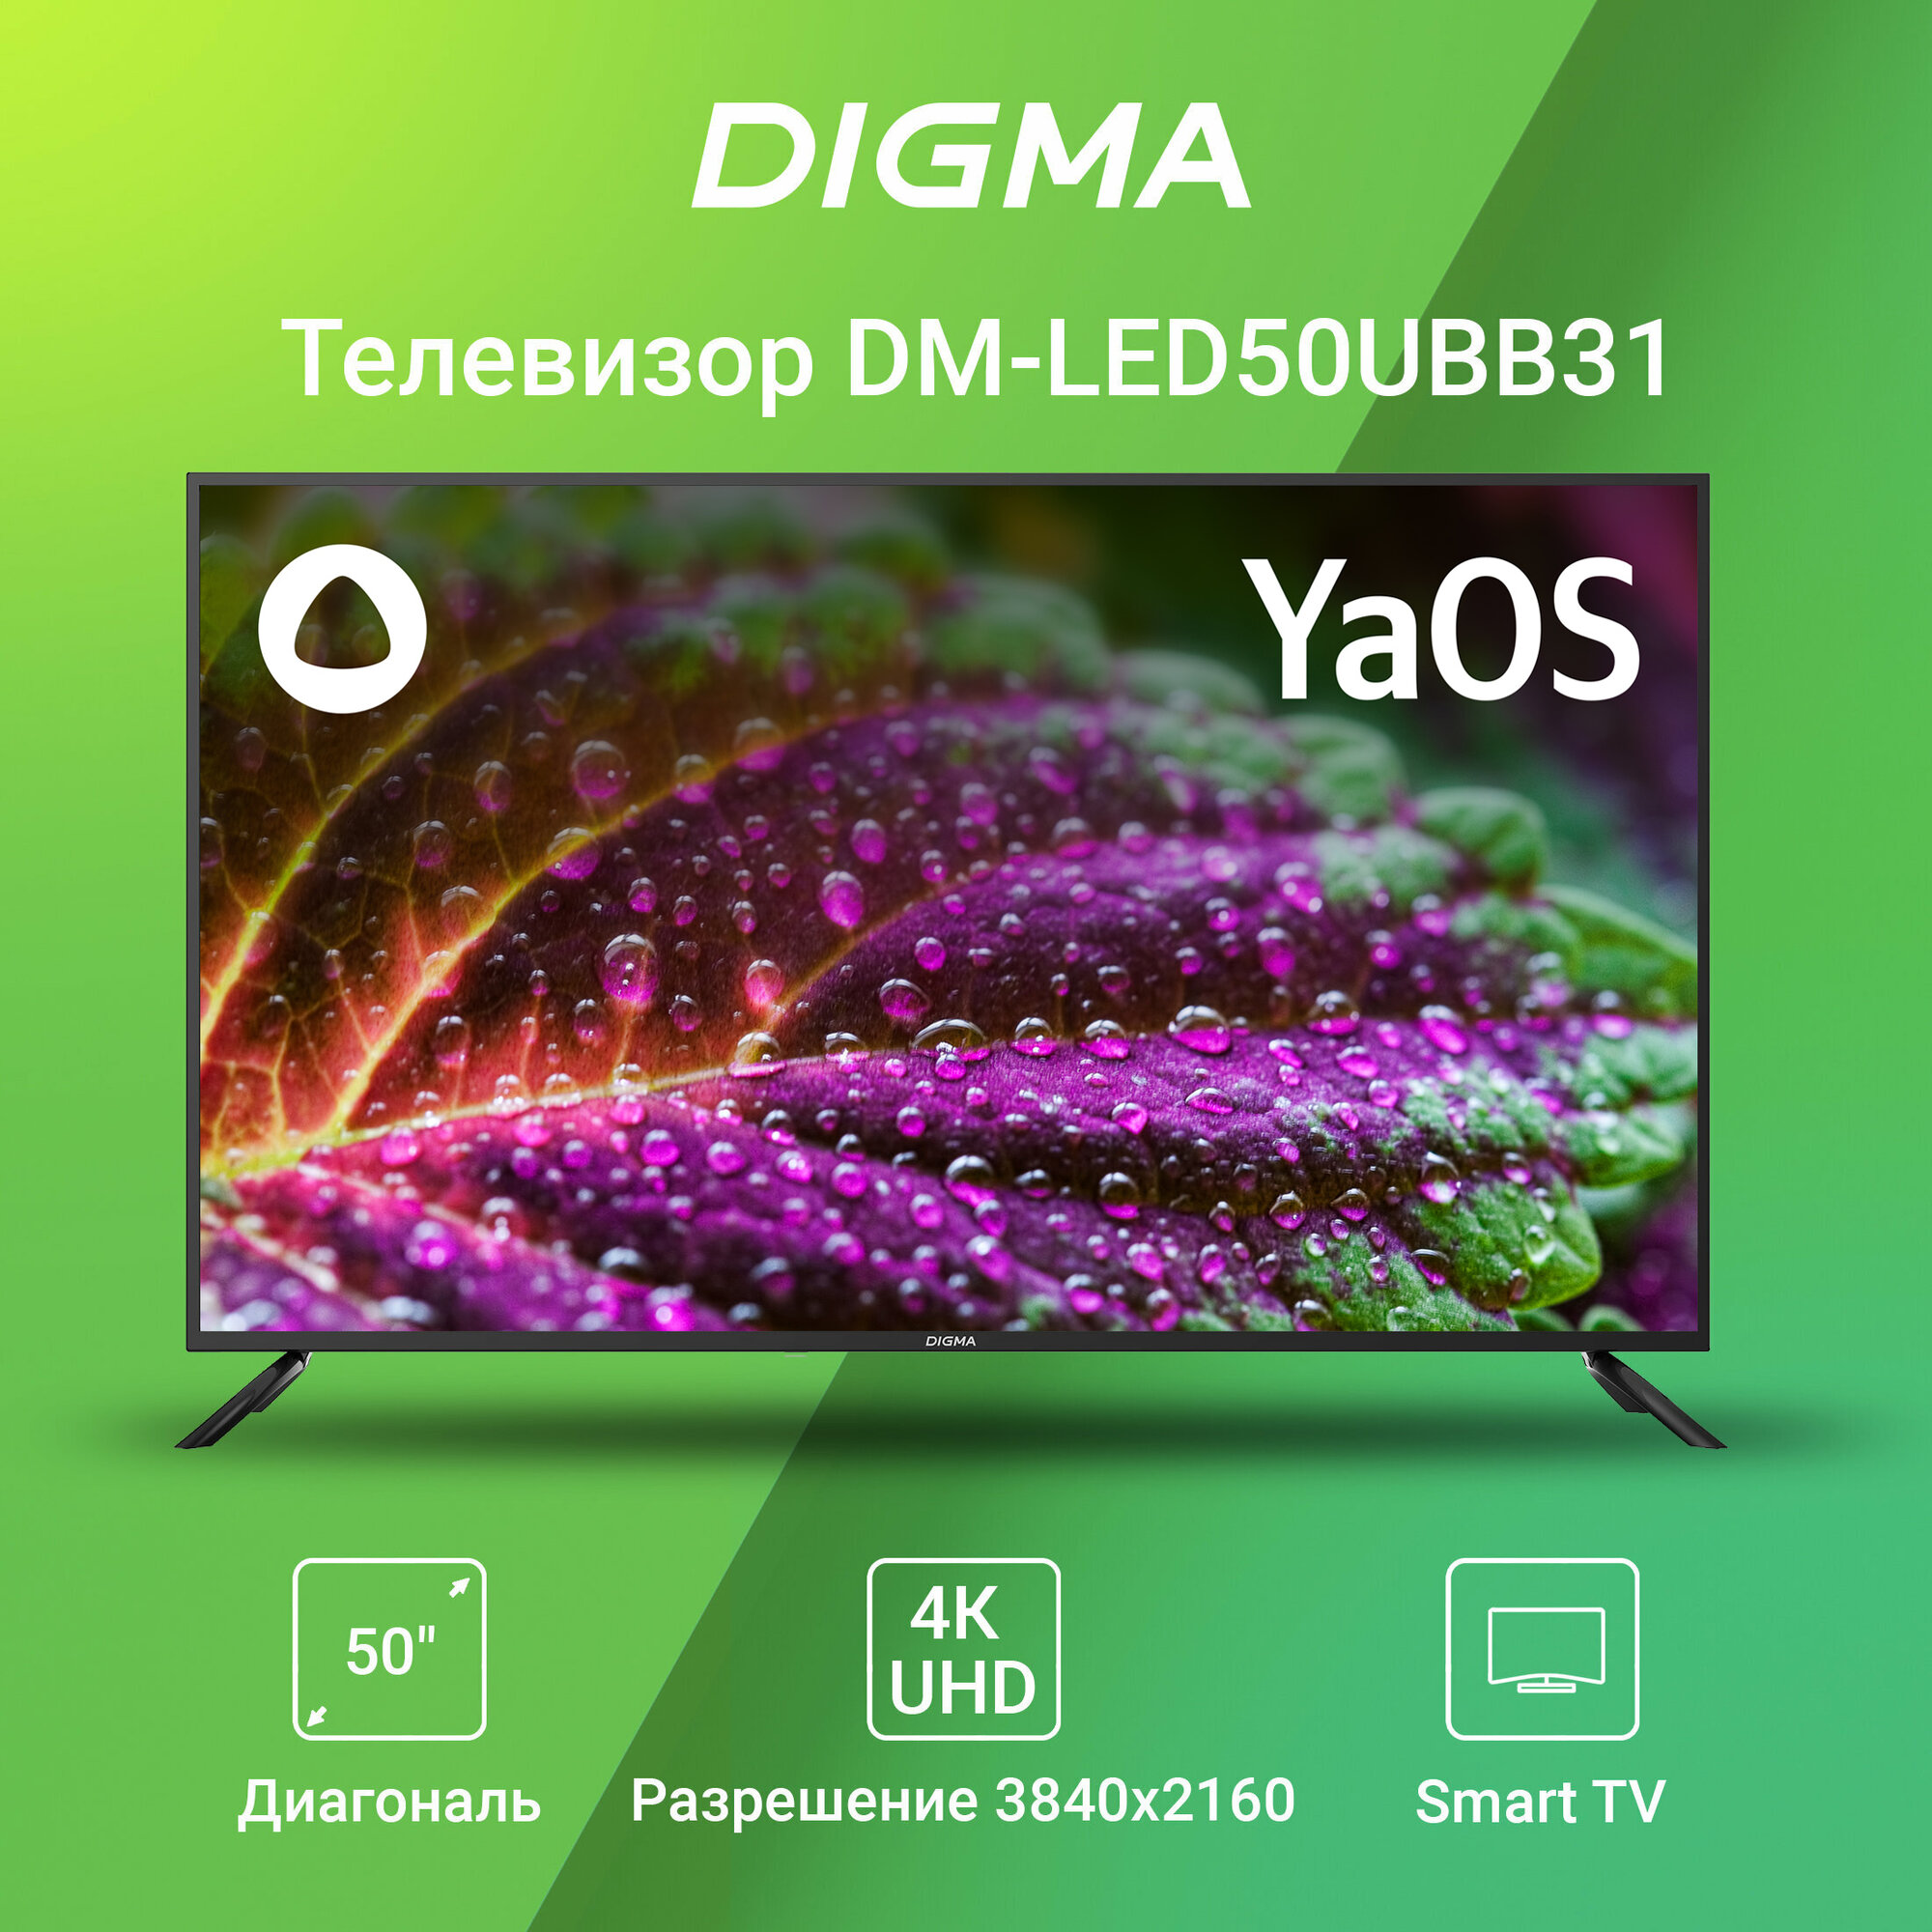 Телевизор Digma Яндекс.ТВ DM-LED50UBB31, 50", LED, 4K Ultra HD, Яндекс.ТВ, черный - фото №2